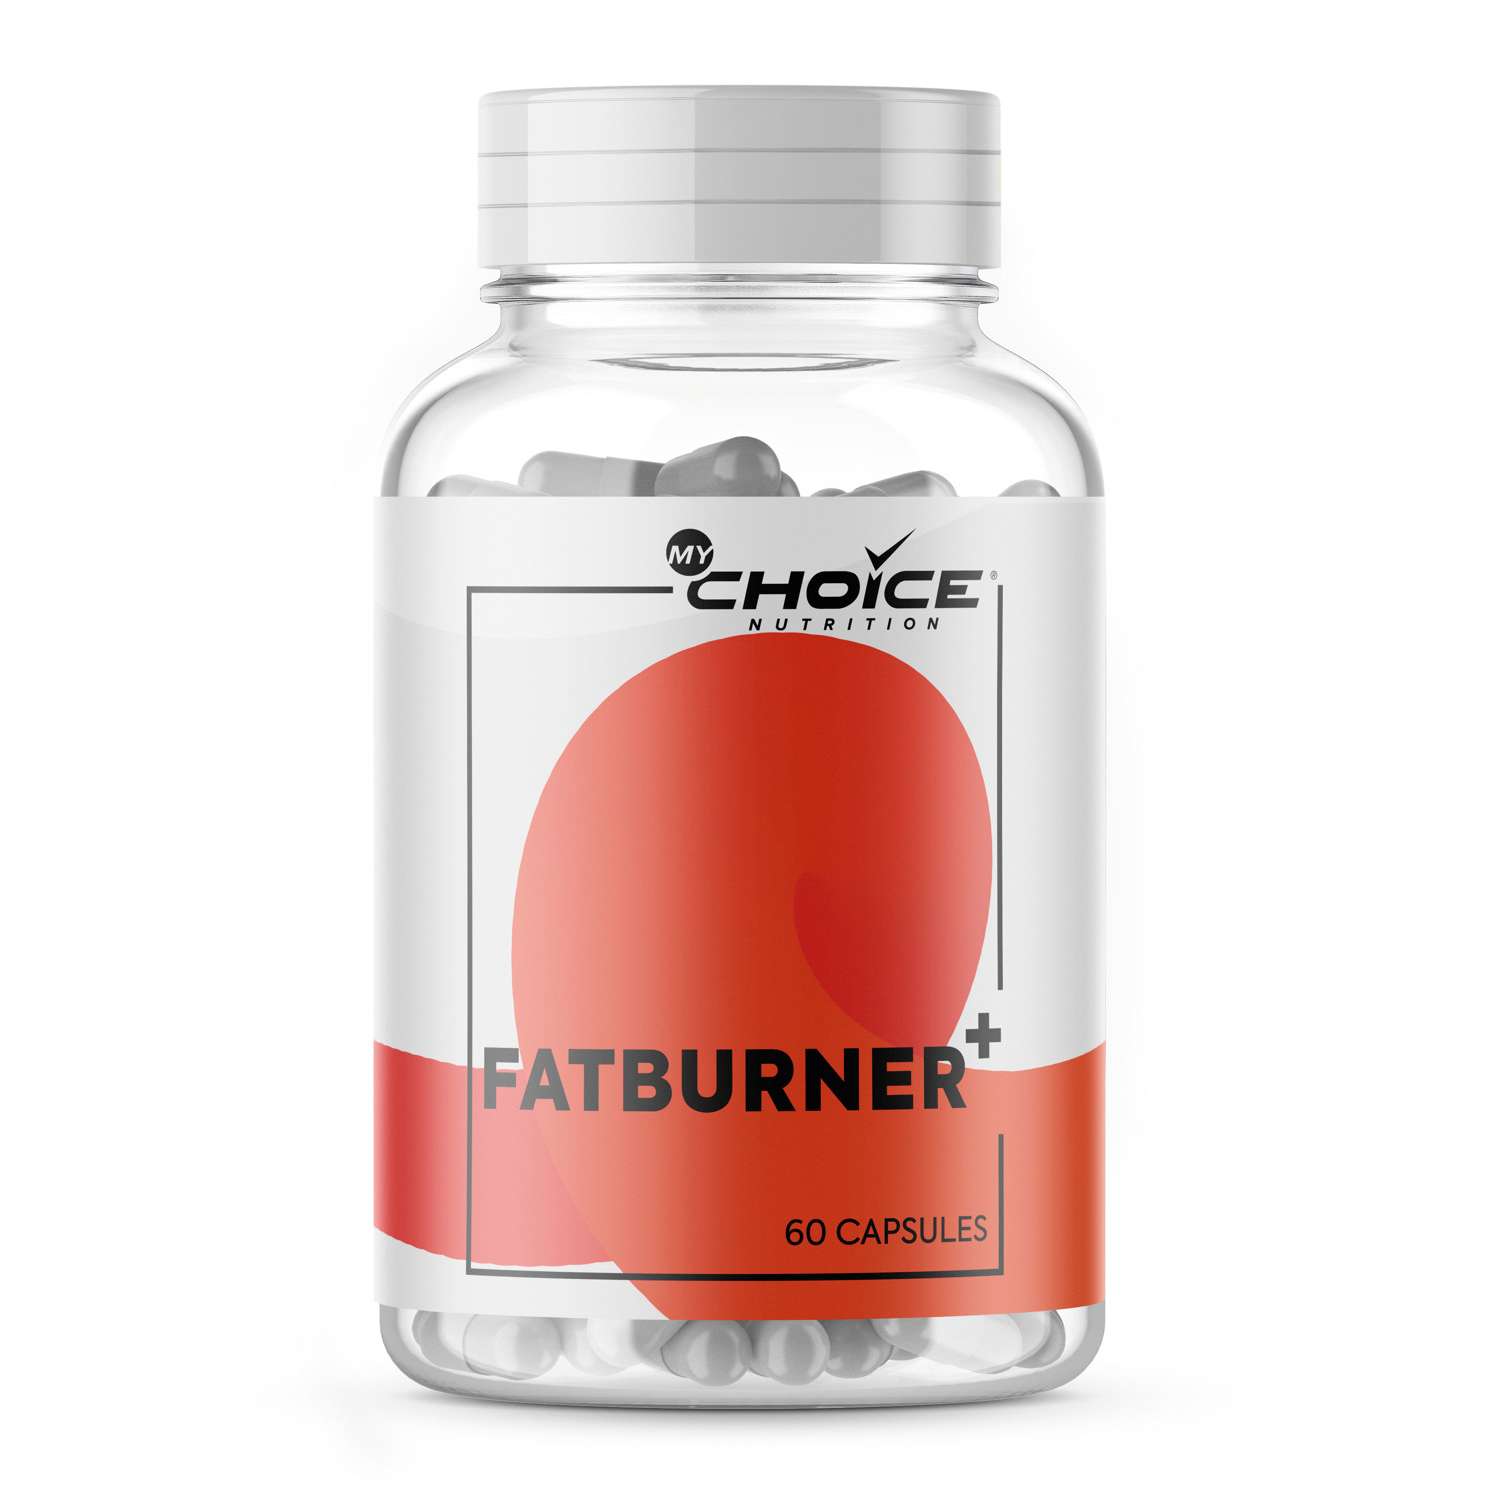 Комплексная пищевая добавка MyChoice Nutrition Fatburner + 60капсул - фото 1